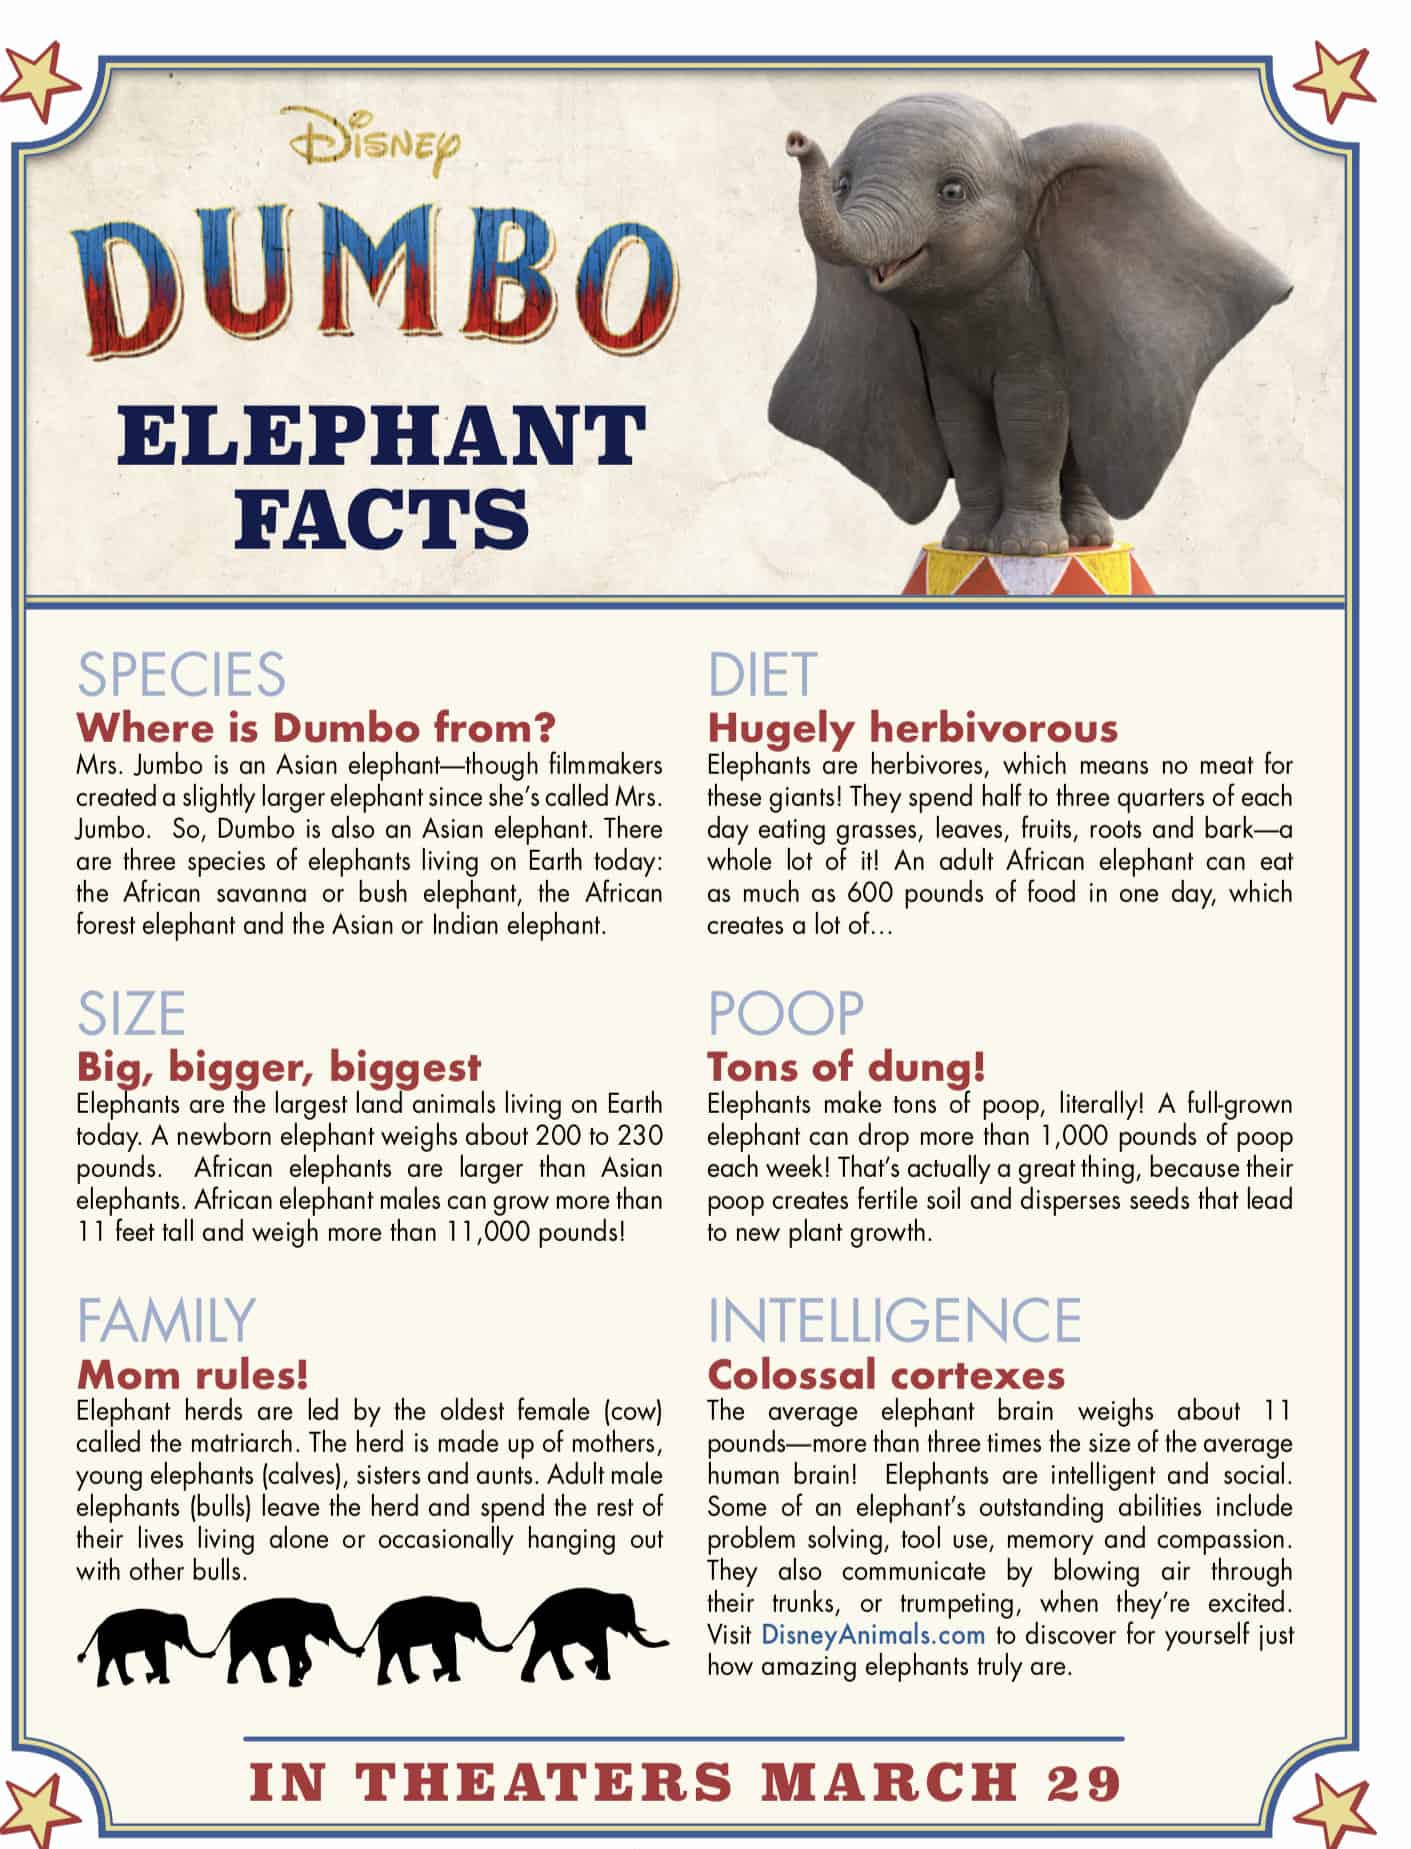 Disney's Dumbo Elephant Facts